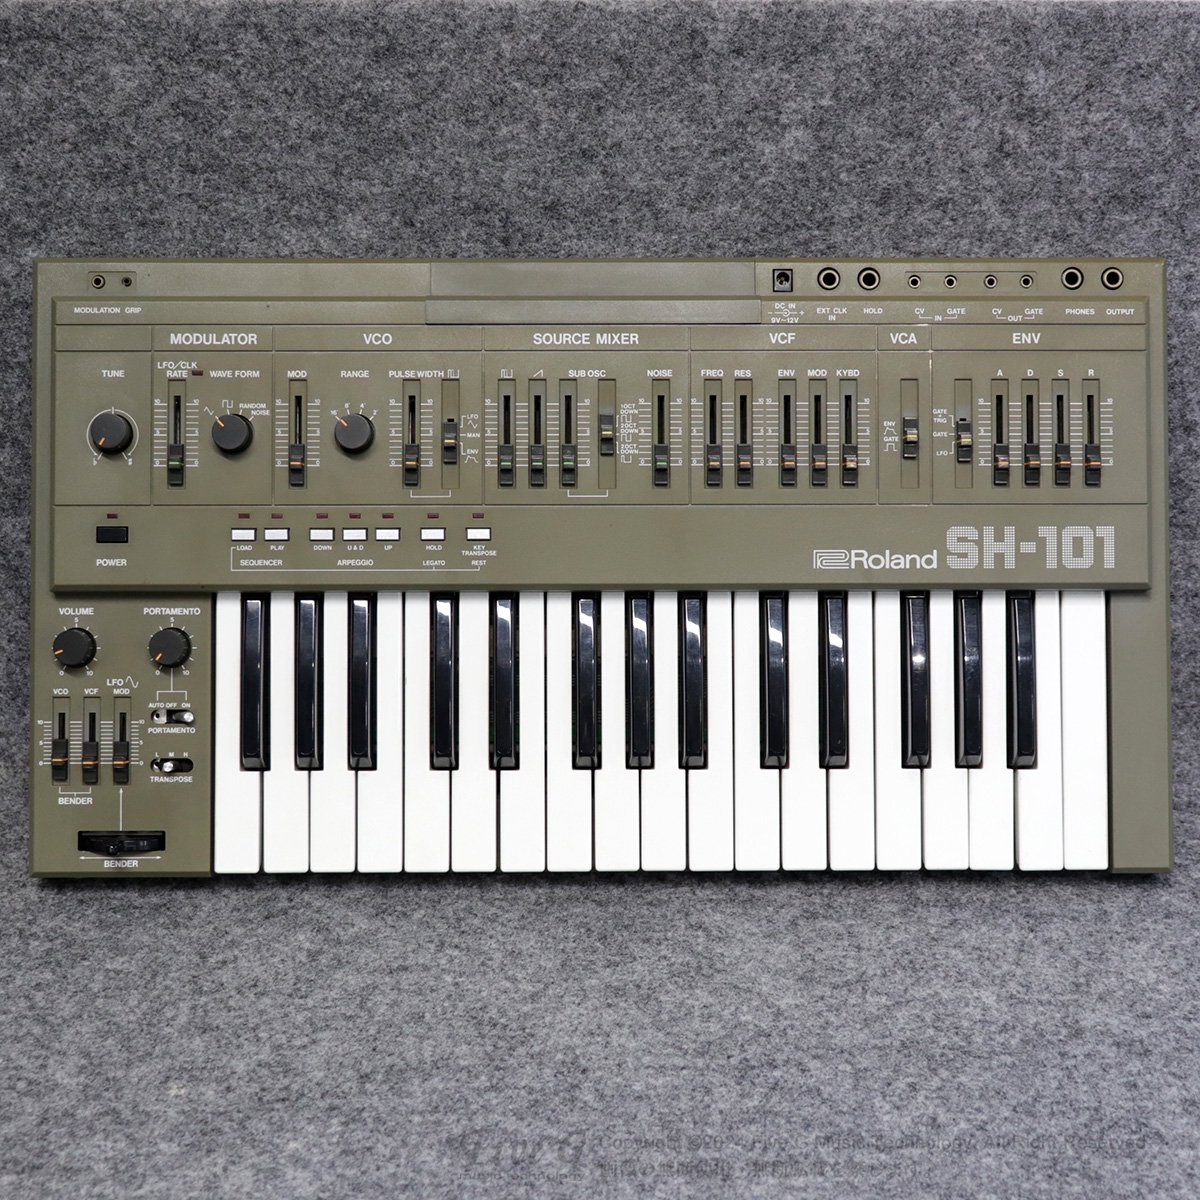 感謝価格】 Roland SH-101シンセサイザー 鍵盤楽器 - bestcheerstone.com